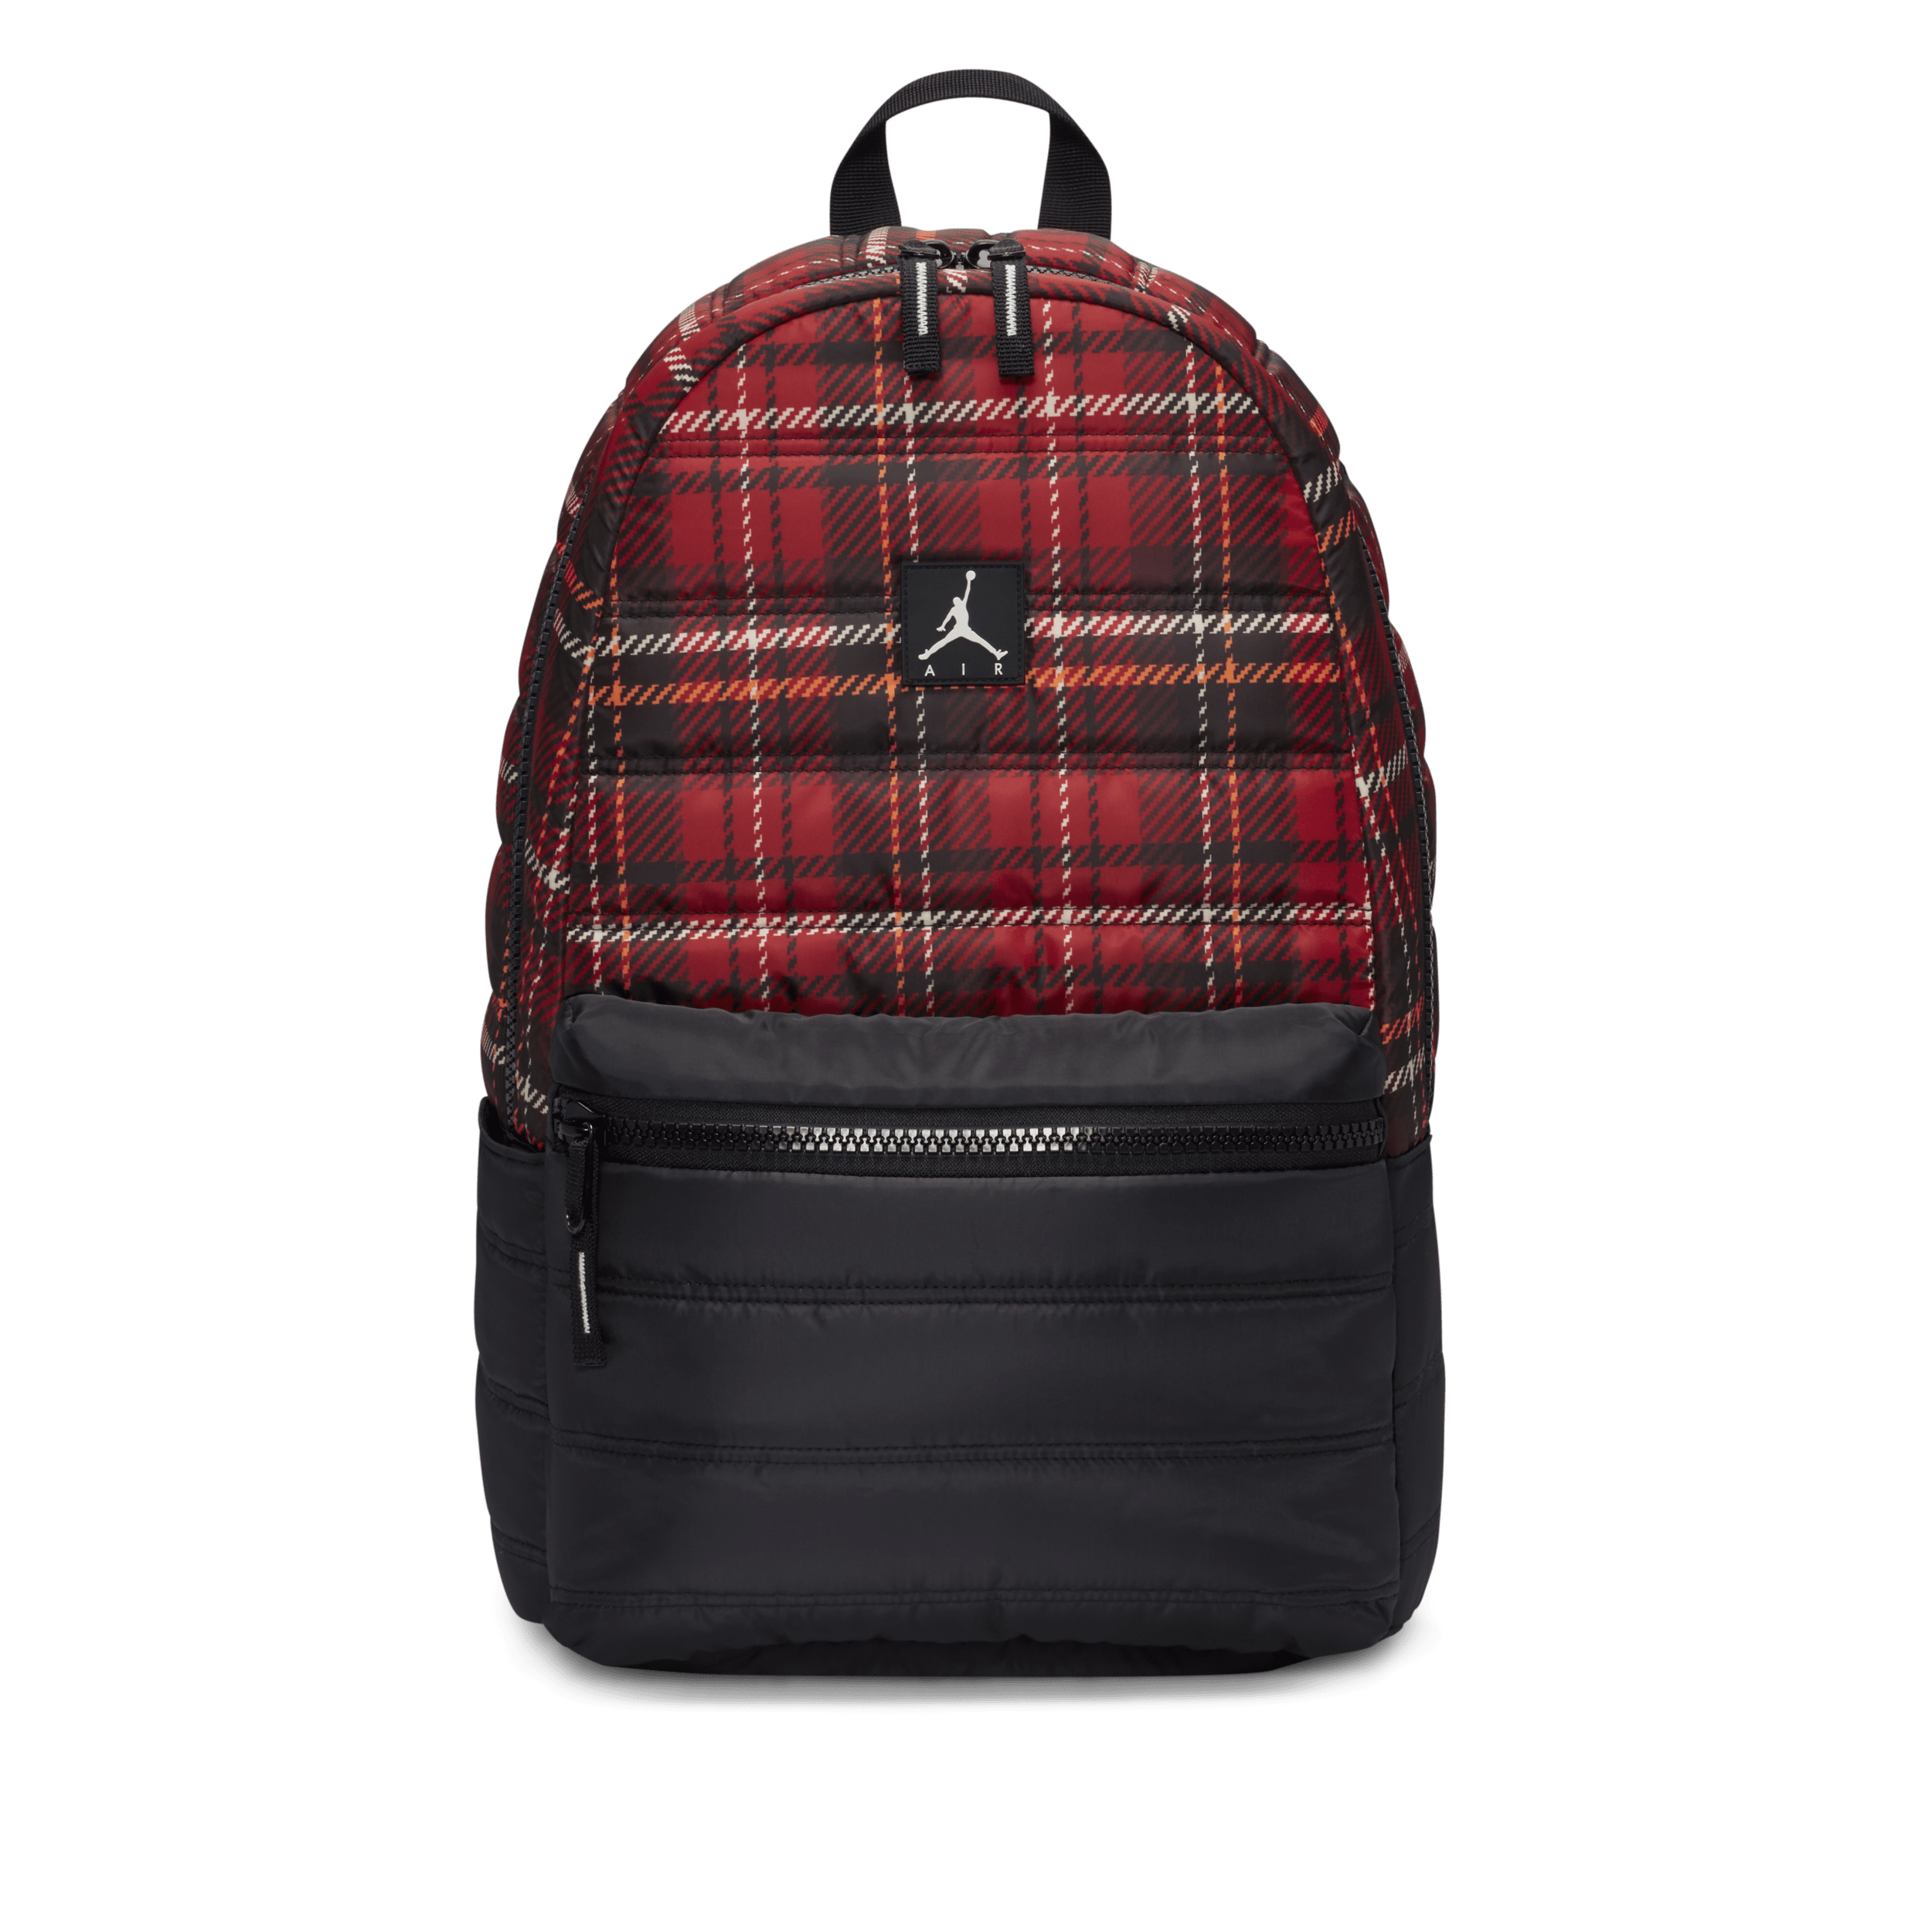 Jordan Quilted Backpack rugzak (19 liter) Rood